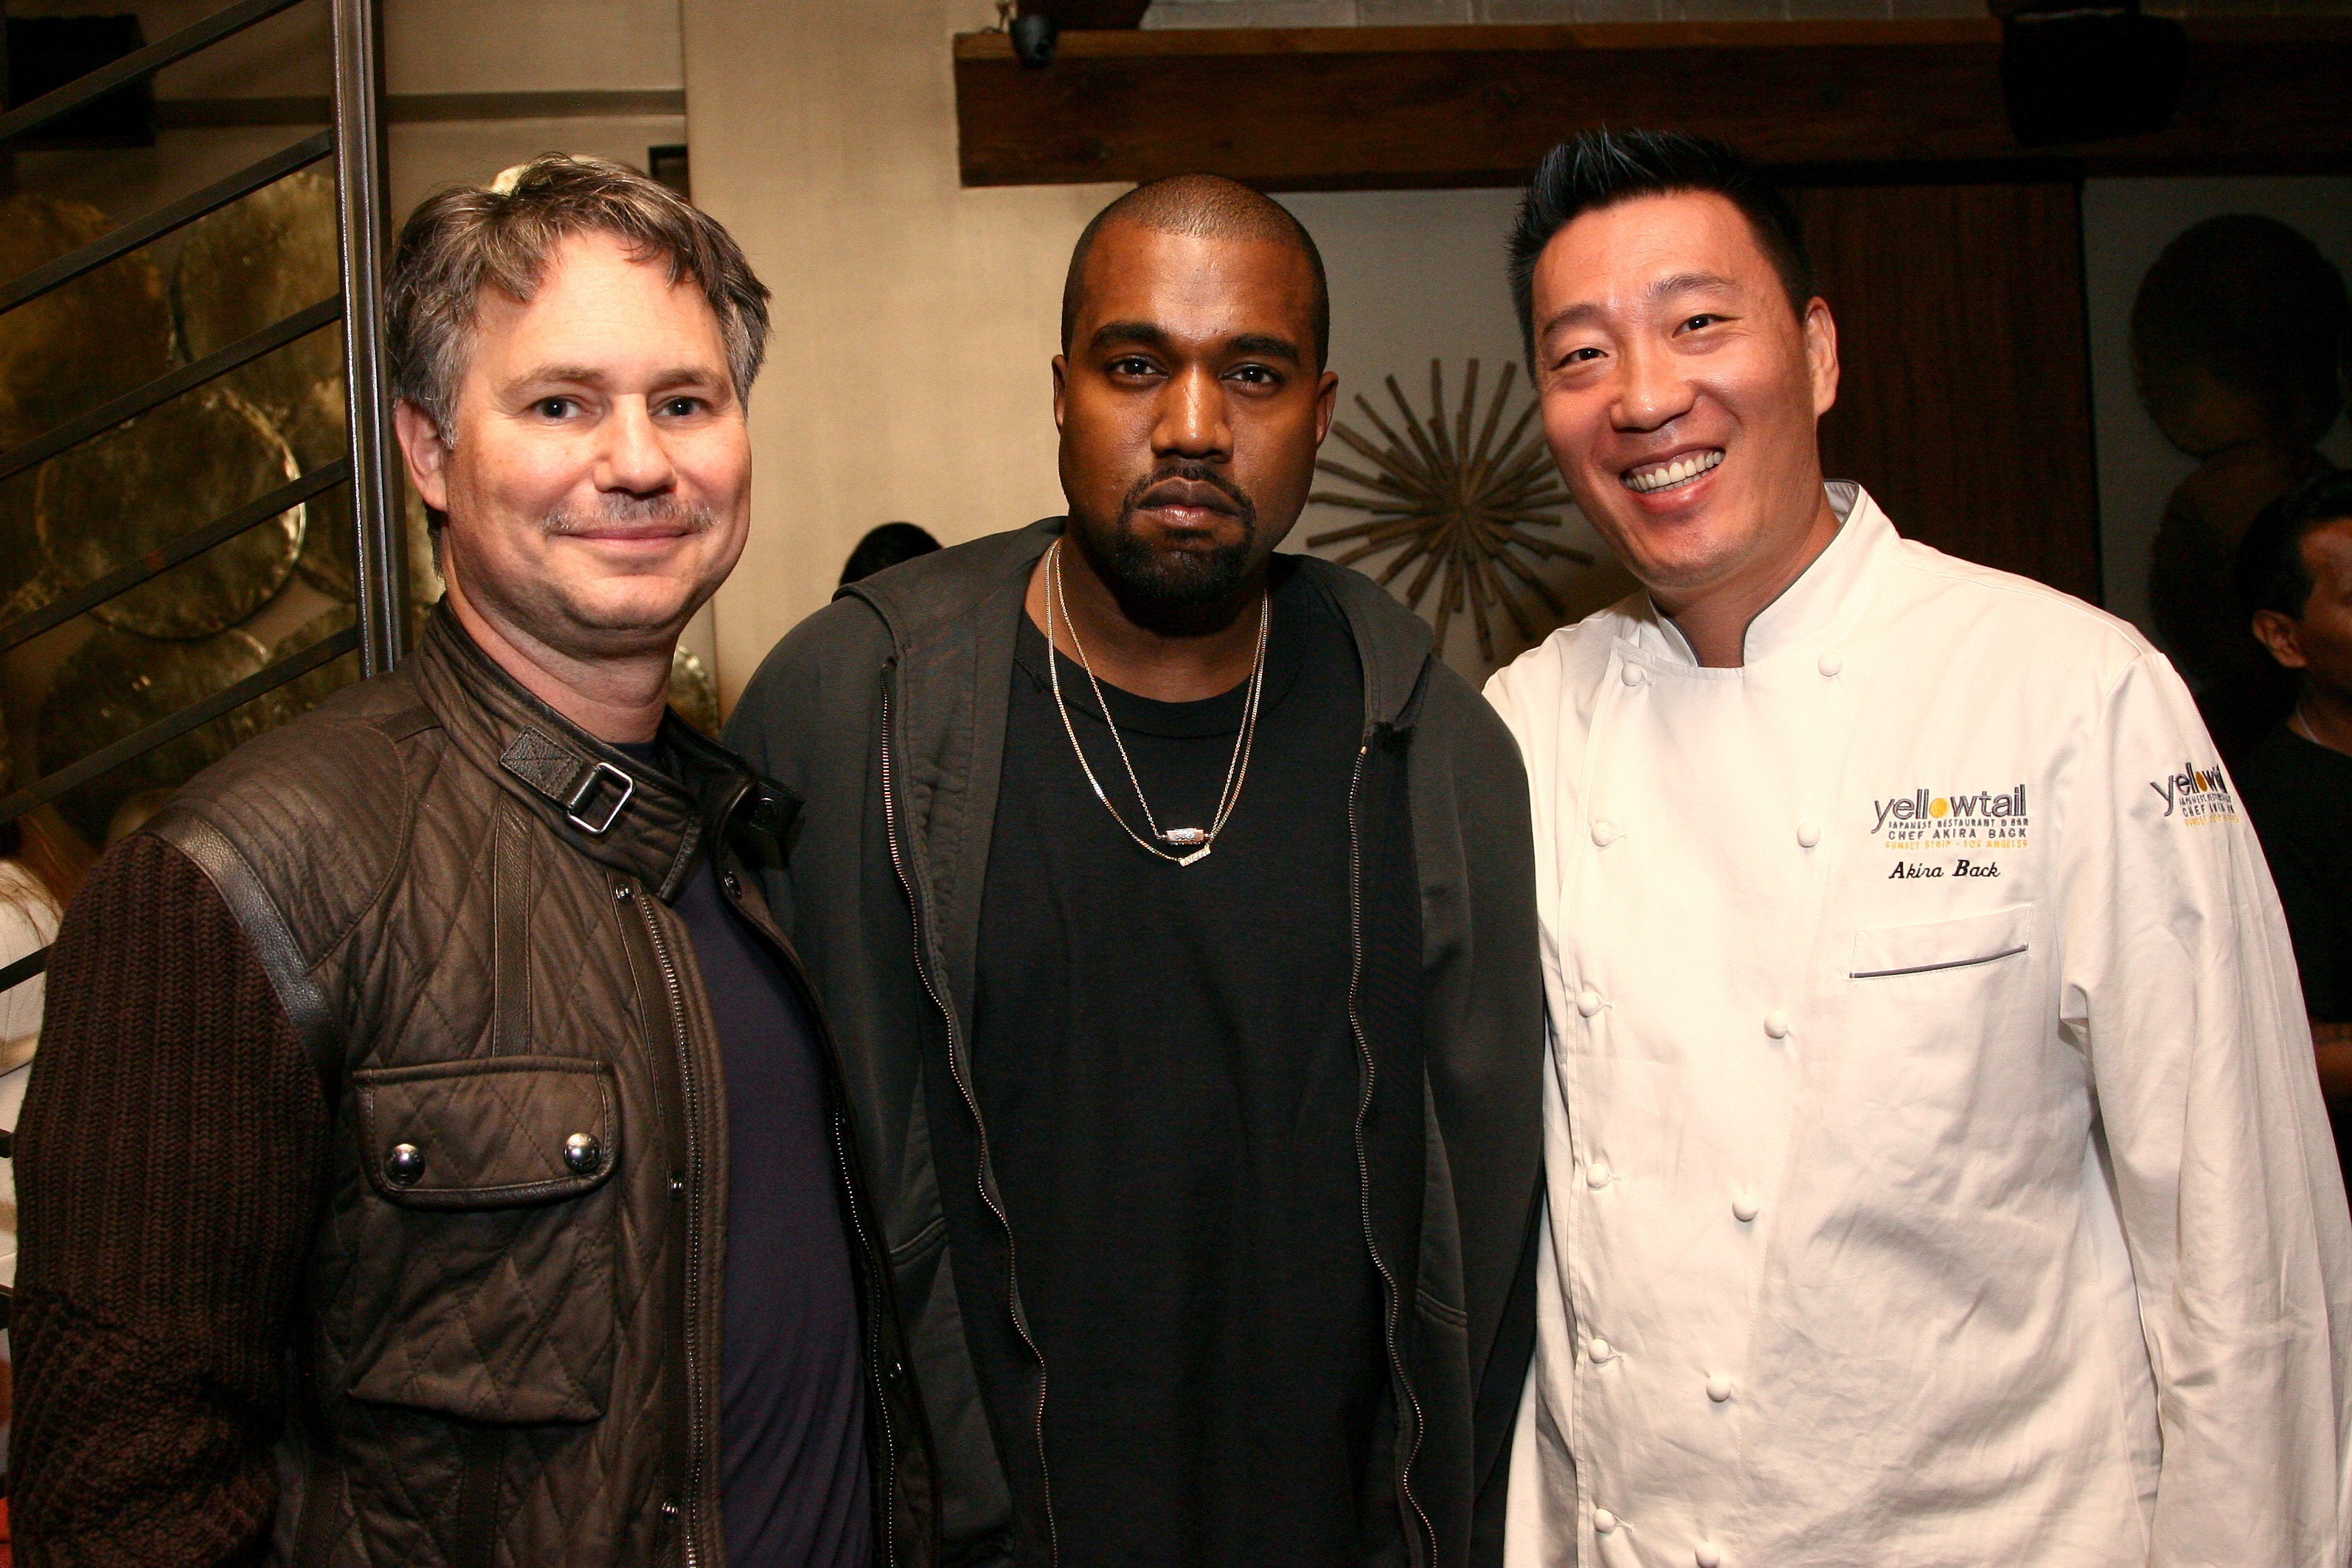 Founder of DuJour Media Jason Binn, rapper Kanye West, and chef Akira Back